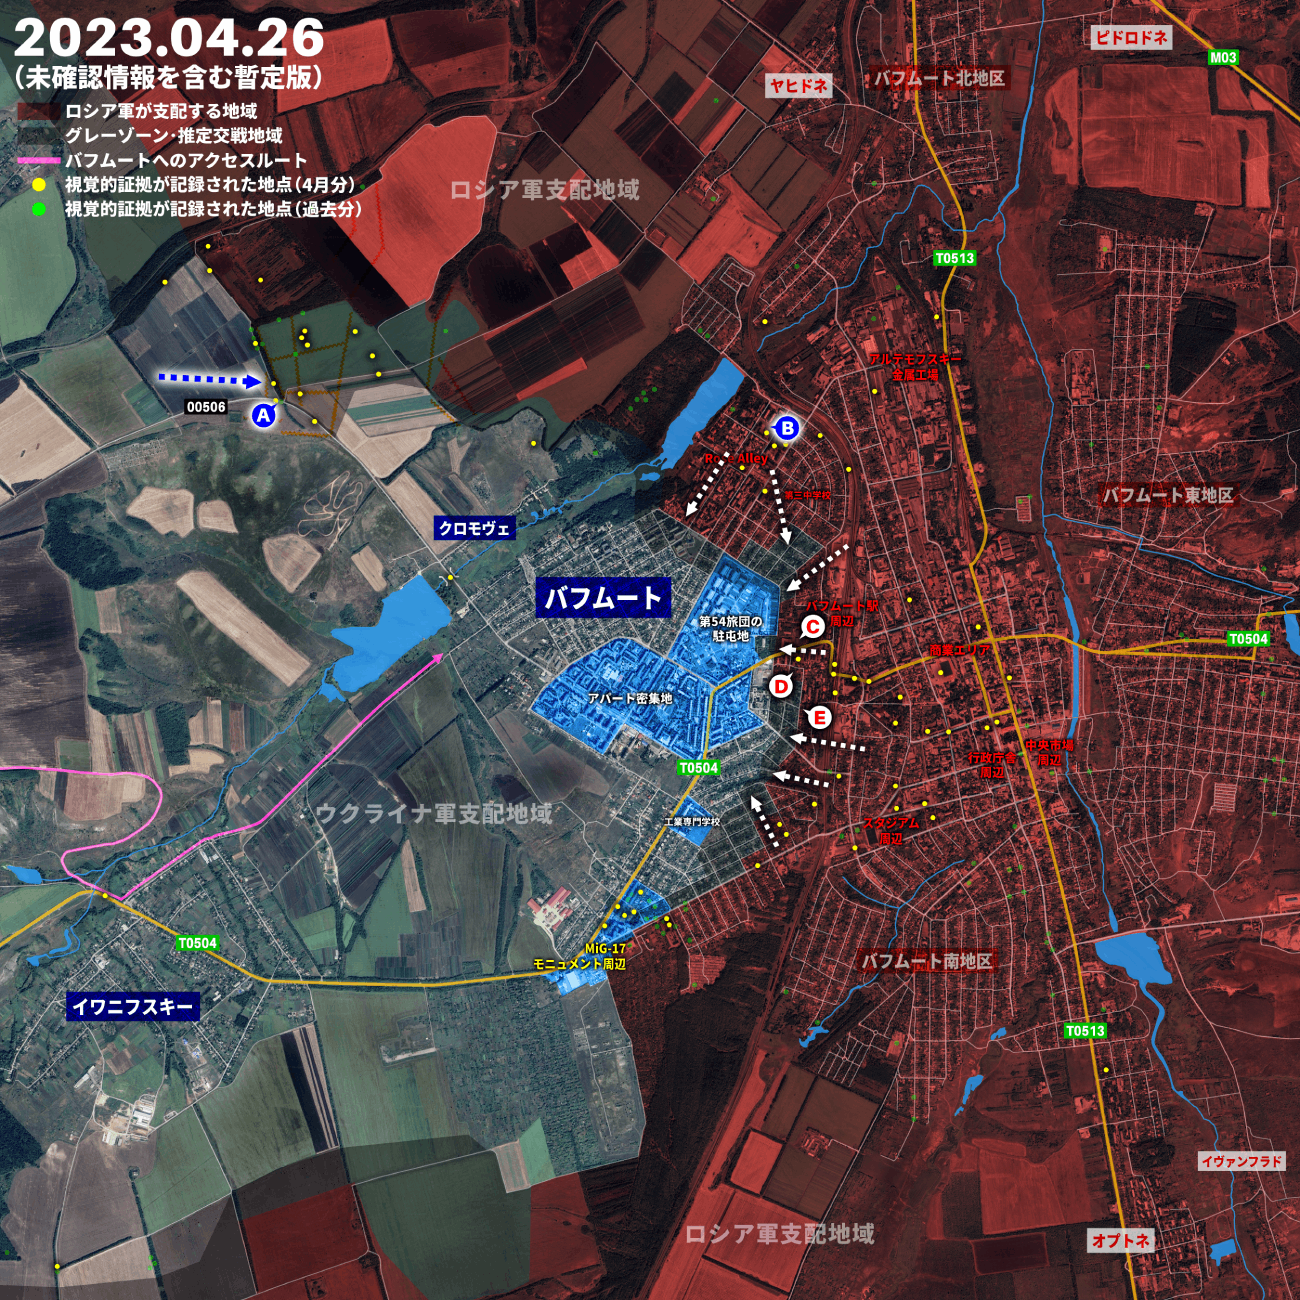 バフムート市内の戦い、ウクライナ軍の第56旅団駐屯地にロシア軍が到達